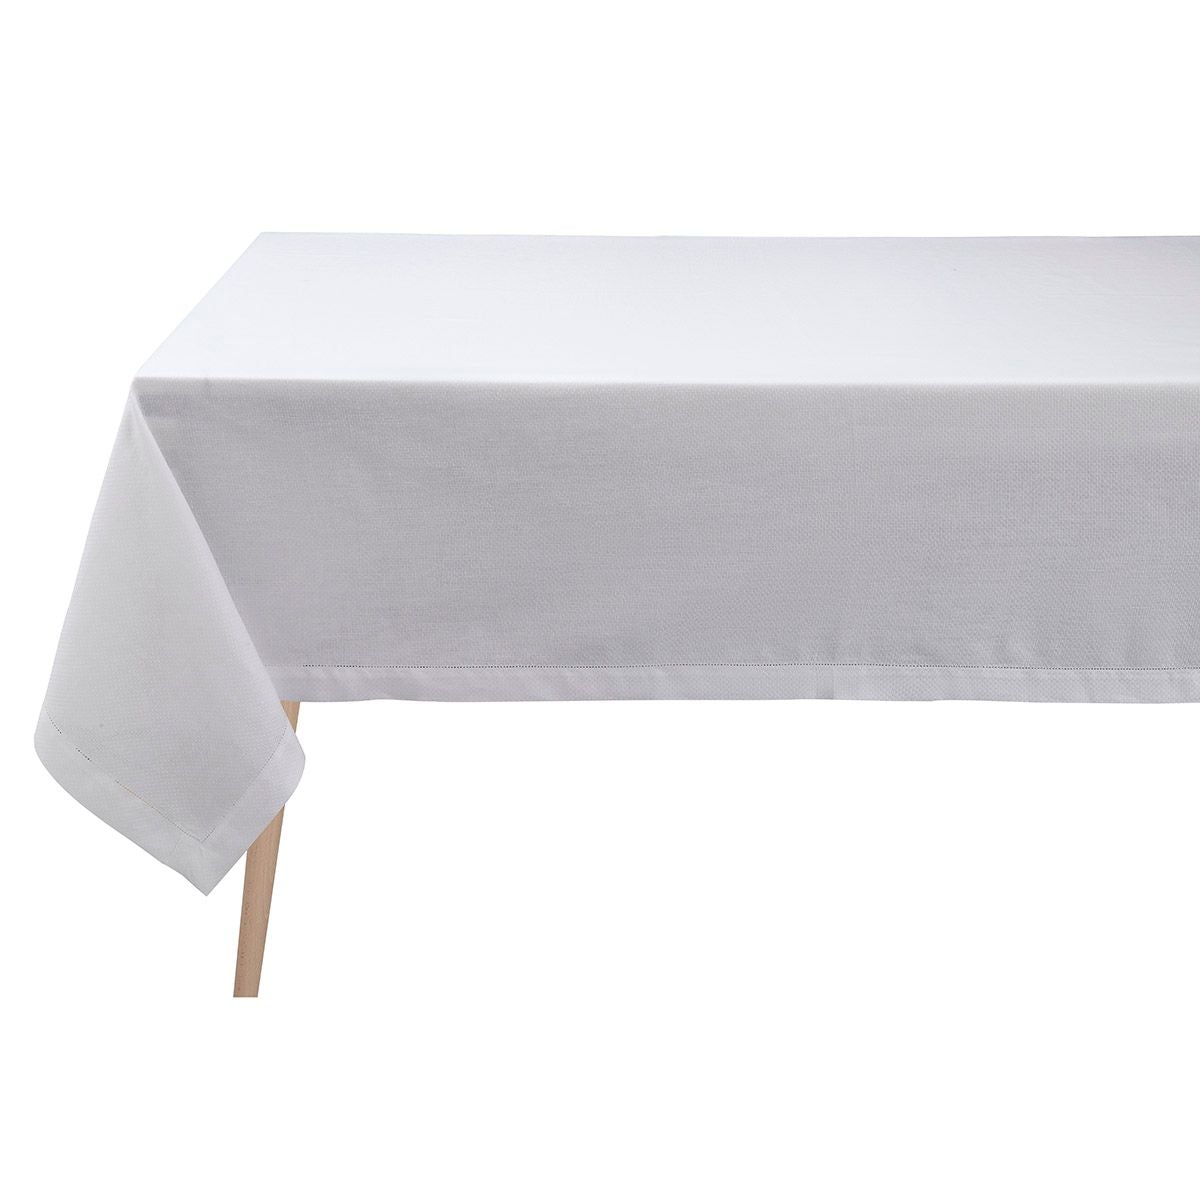 Portofino White Tablecloth by Le Jacquard Français | Fig Linens